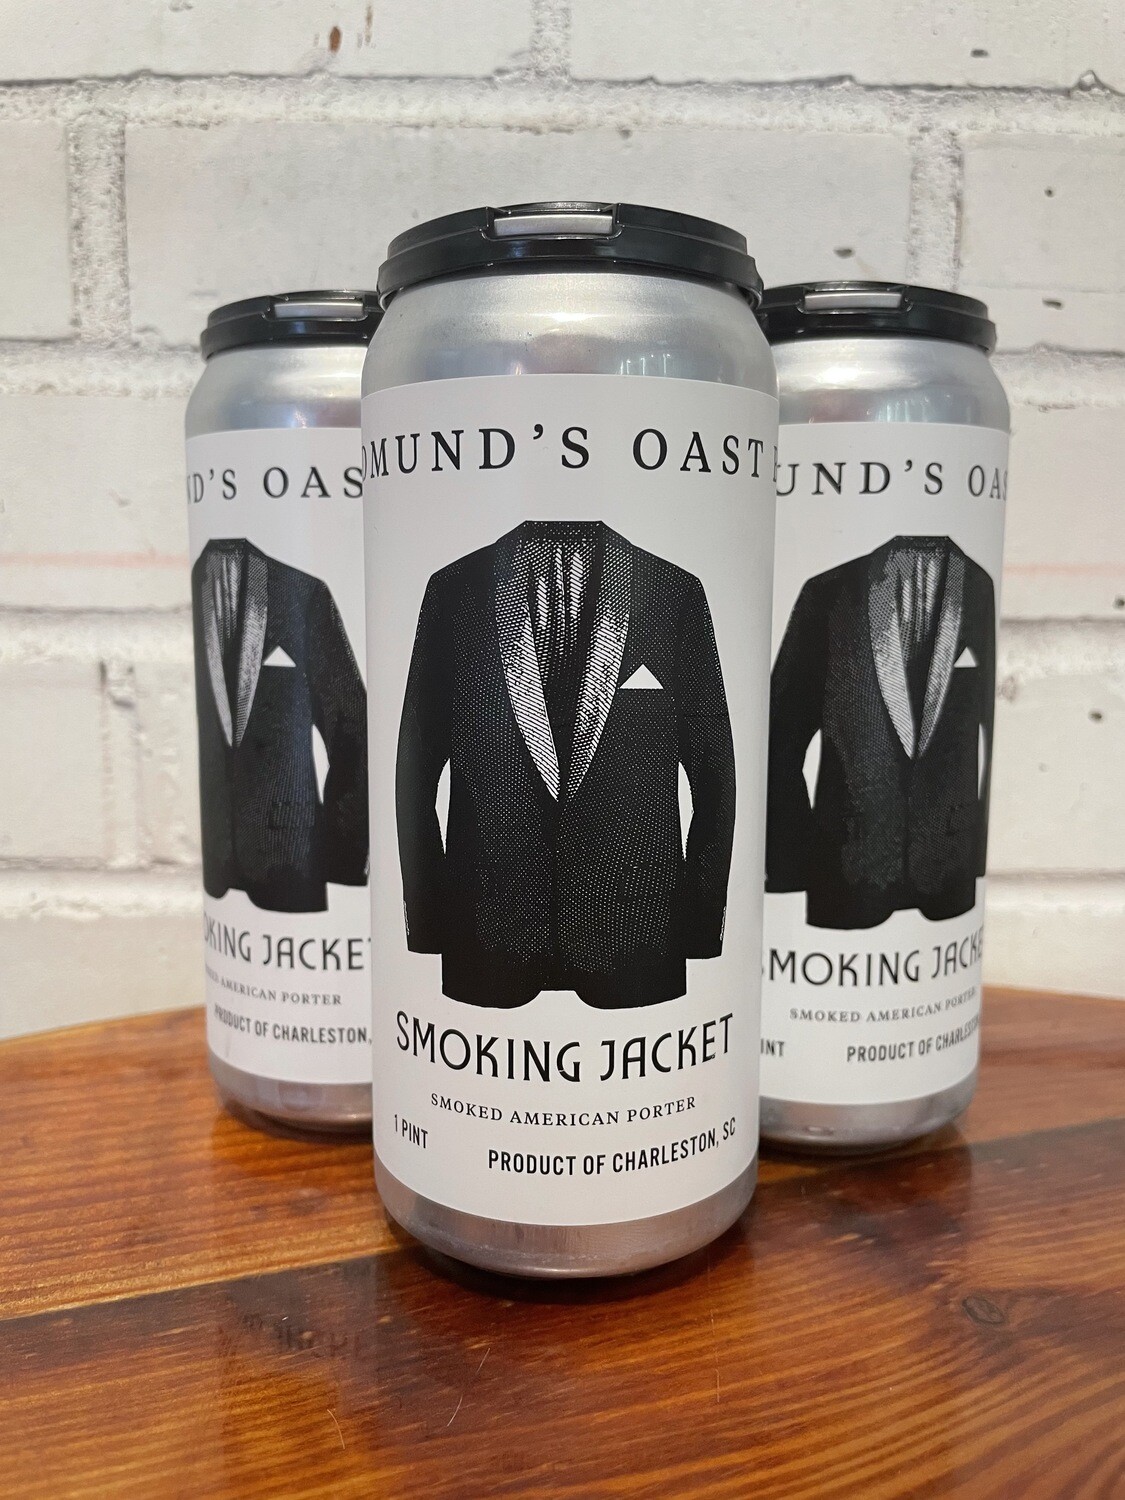 Edmund's Oast Smoking Jacket (4pk)